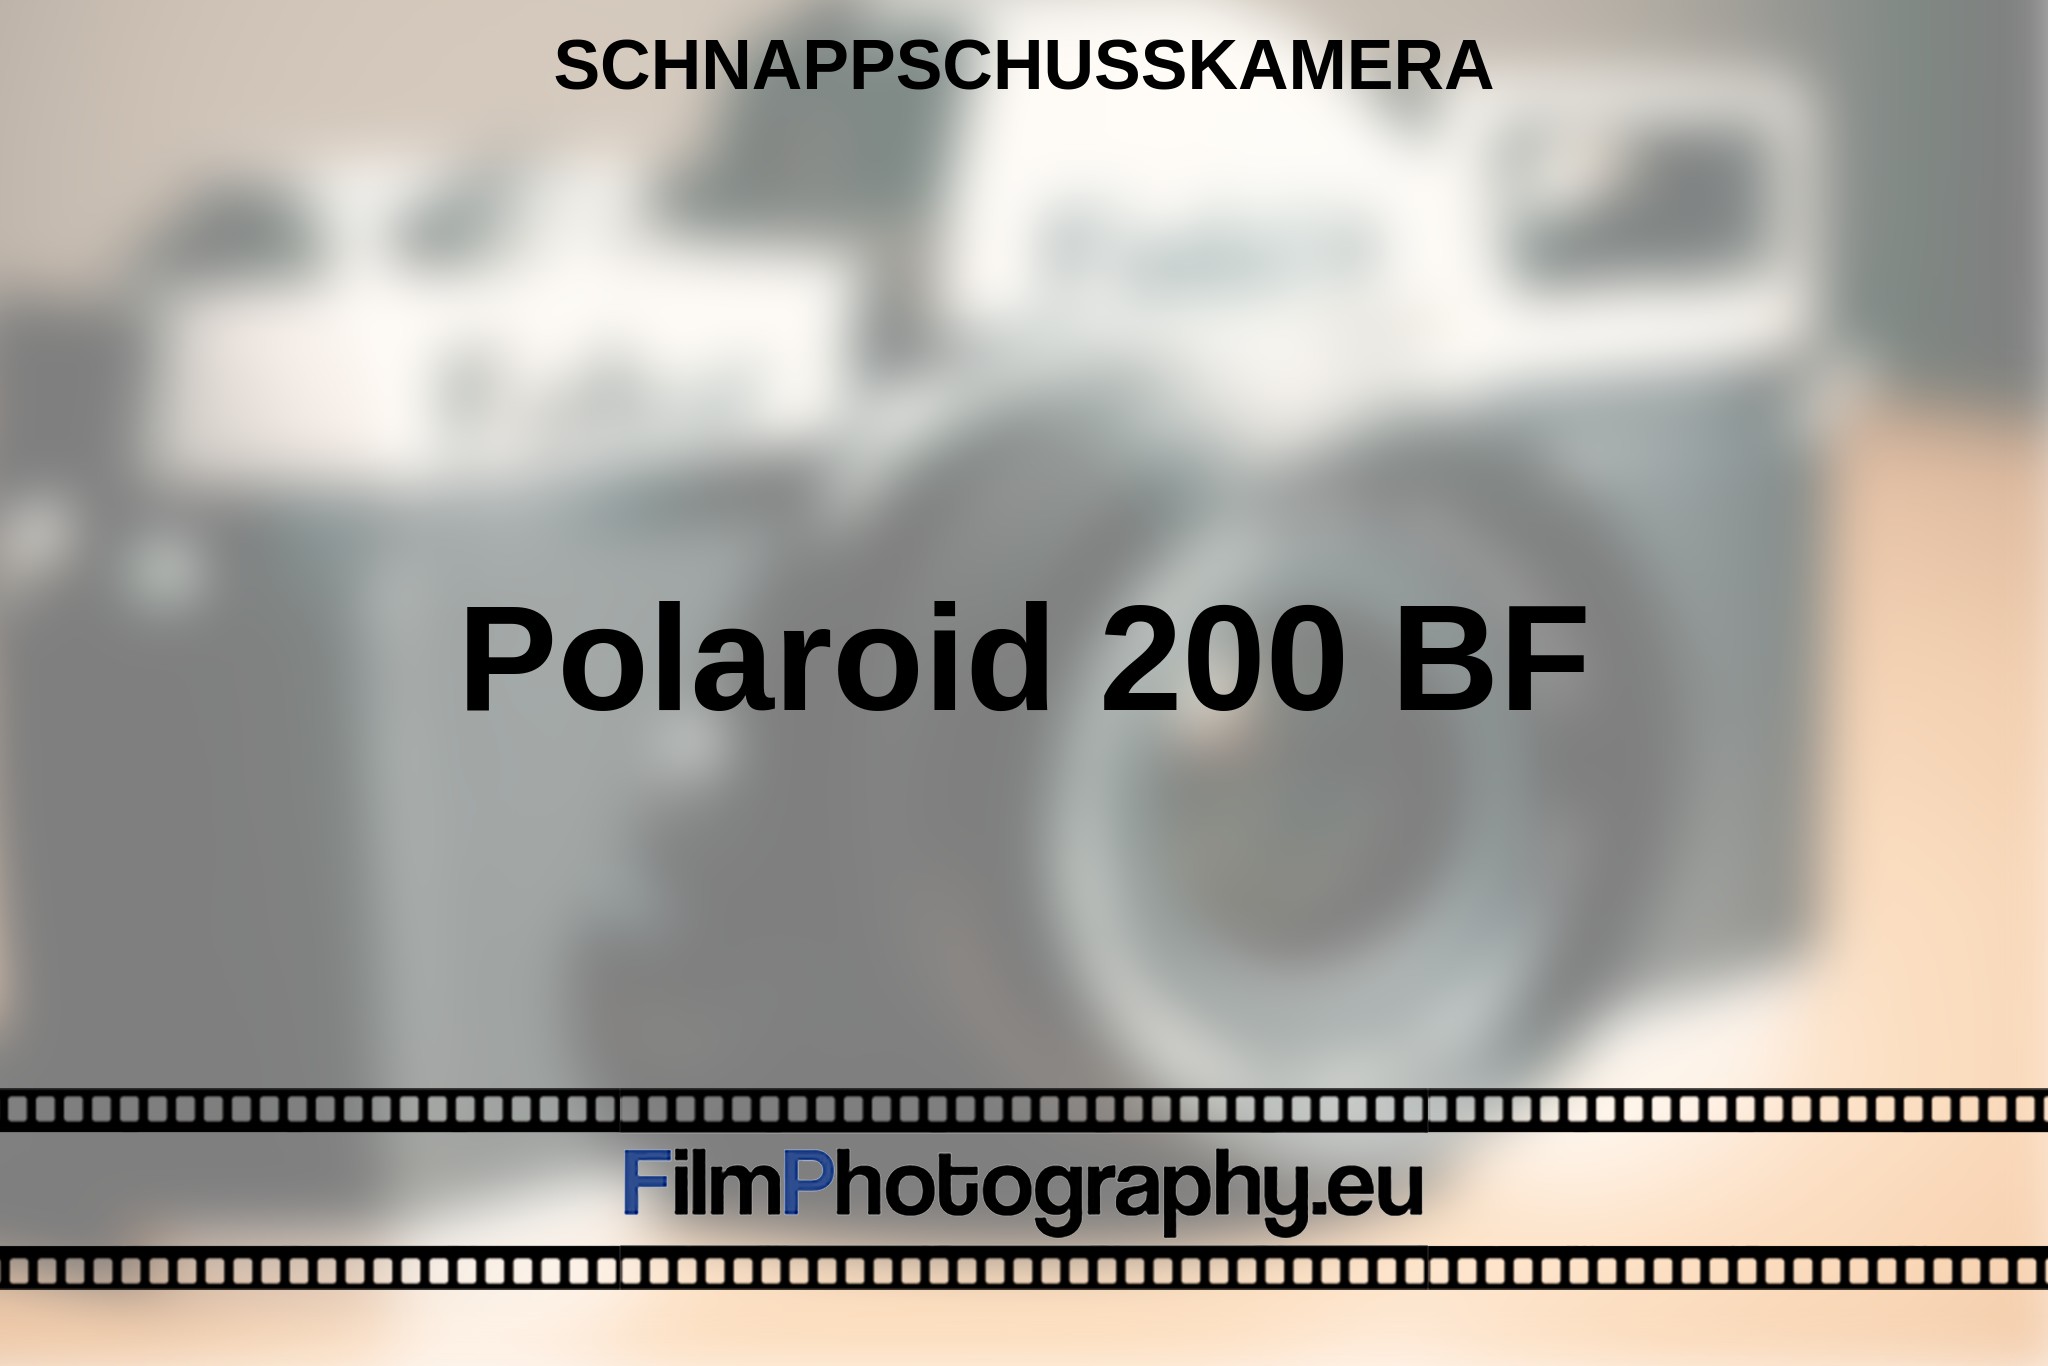 polaroid-200-bf-schnappschusskamera-bnv.jpg